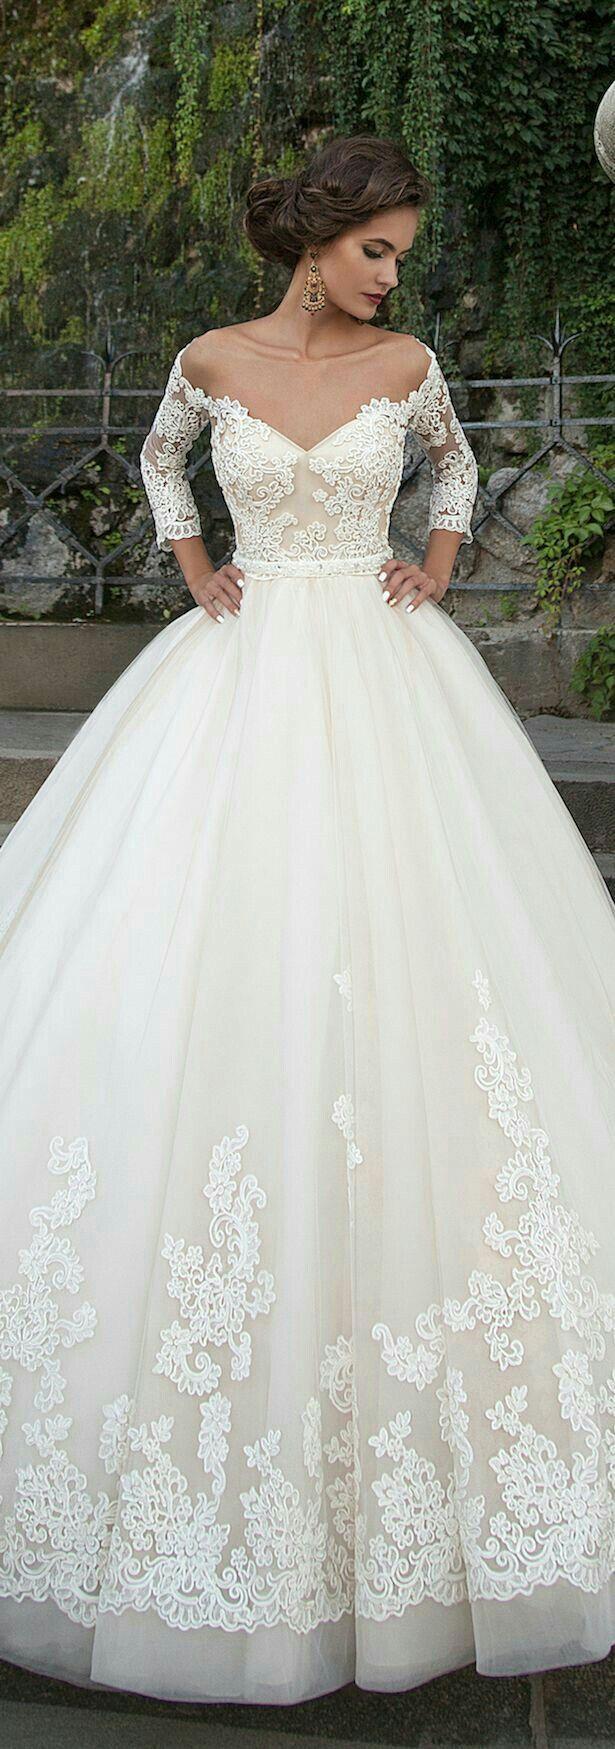 زفاف - The Best Wedding Dresses